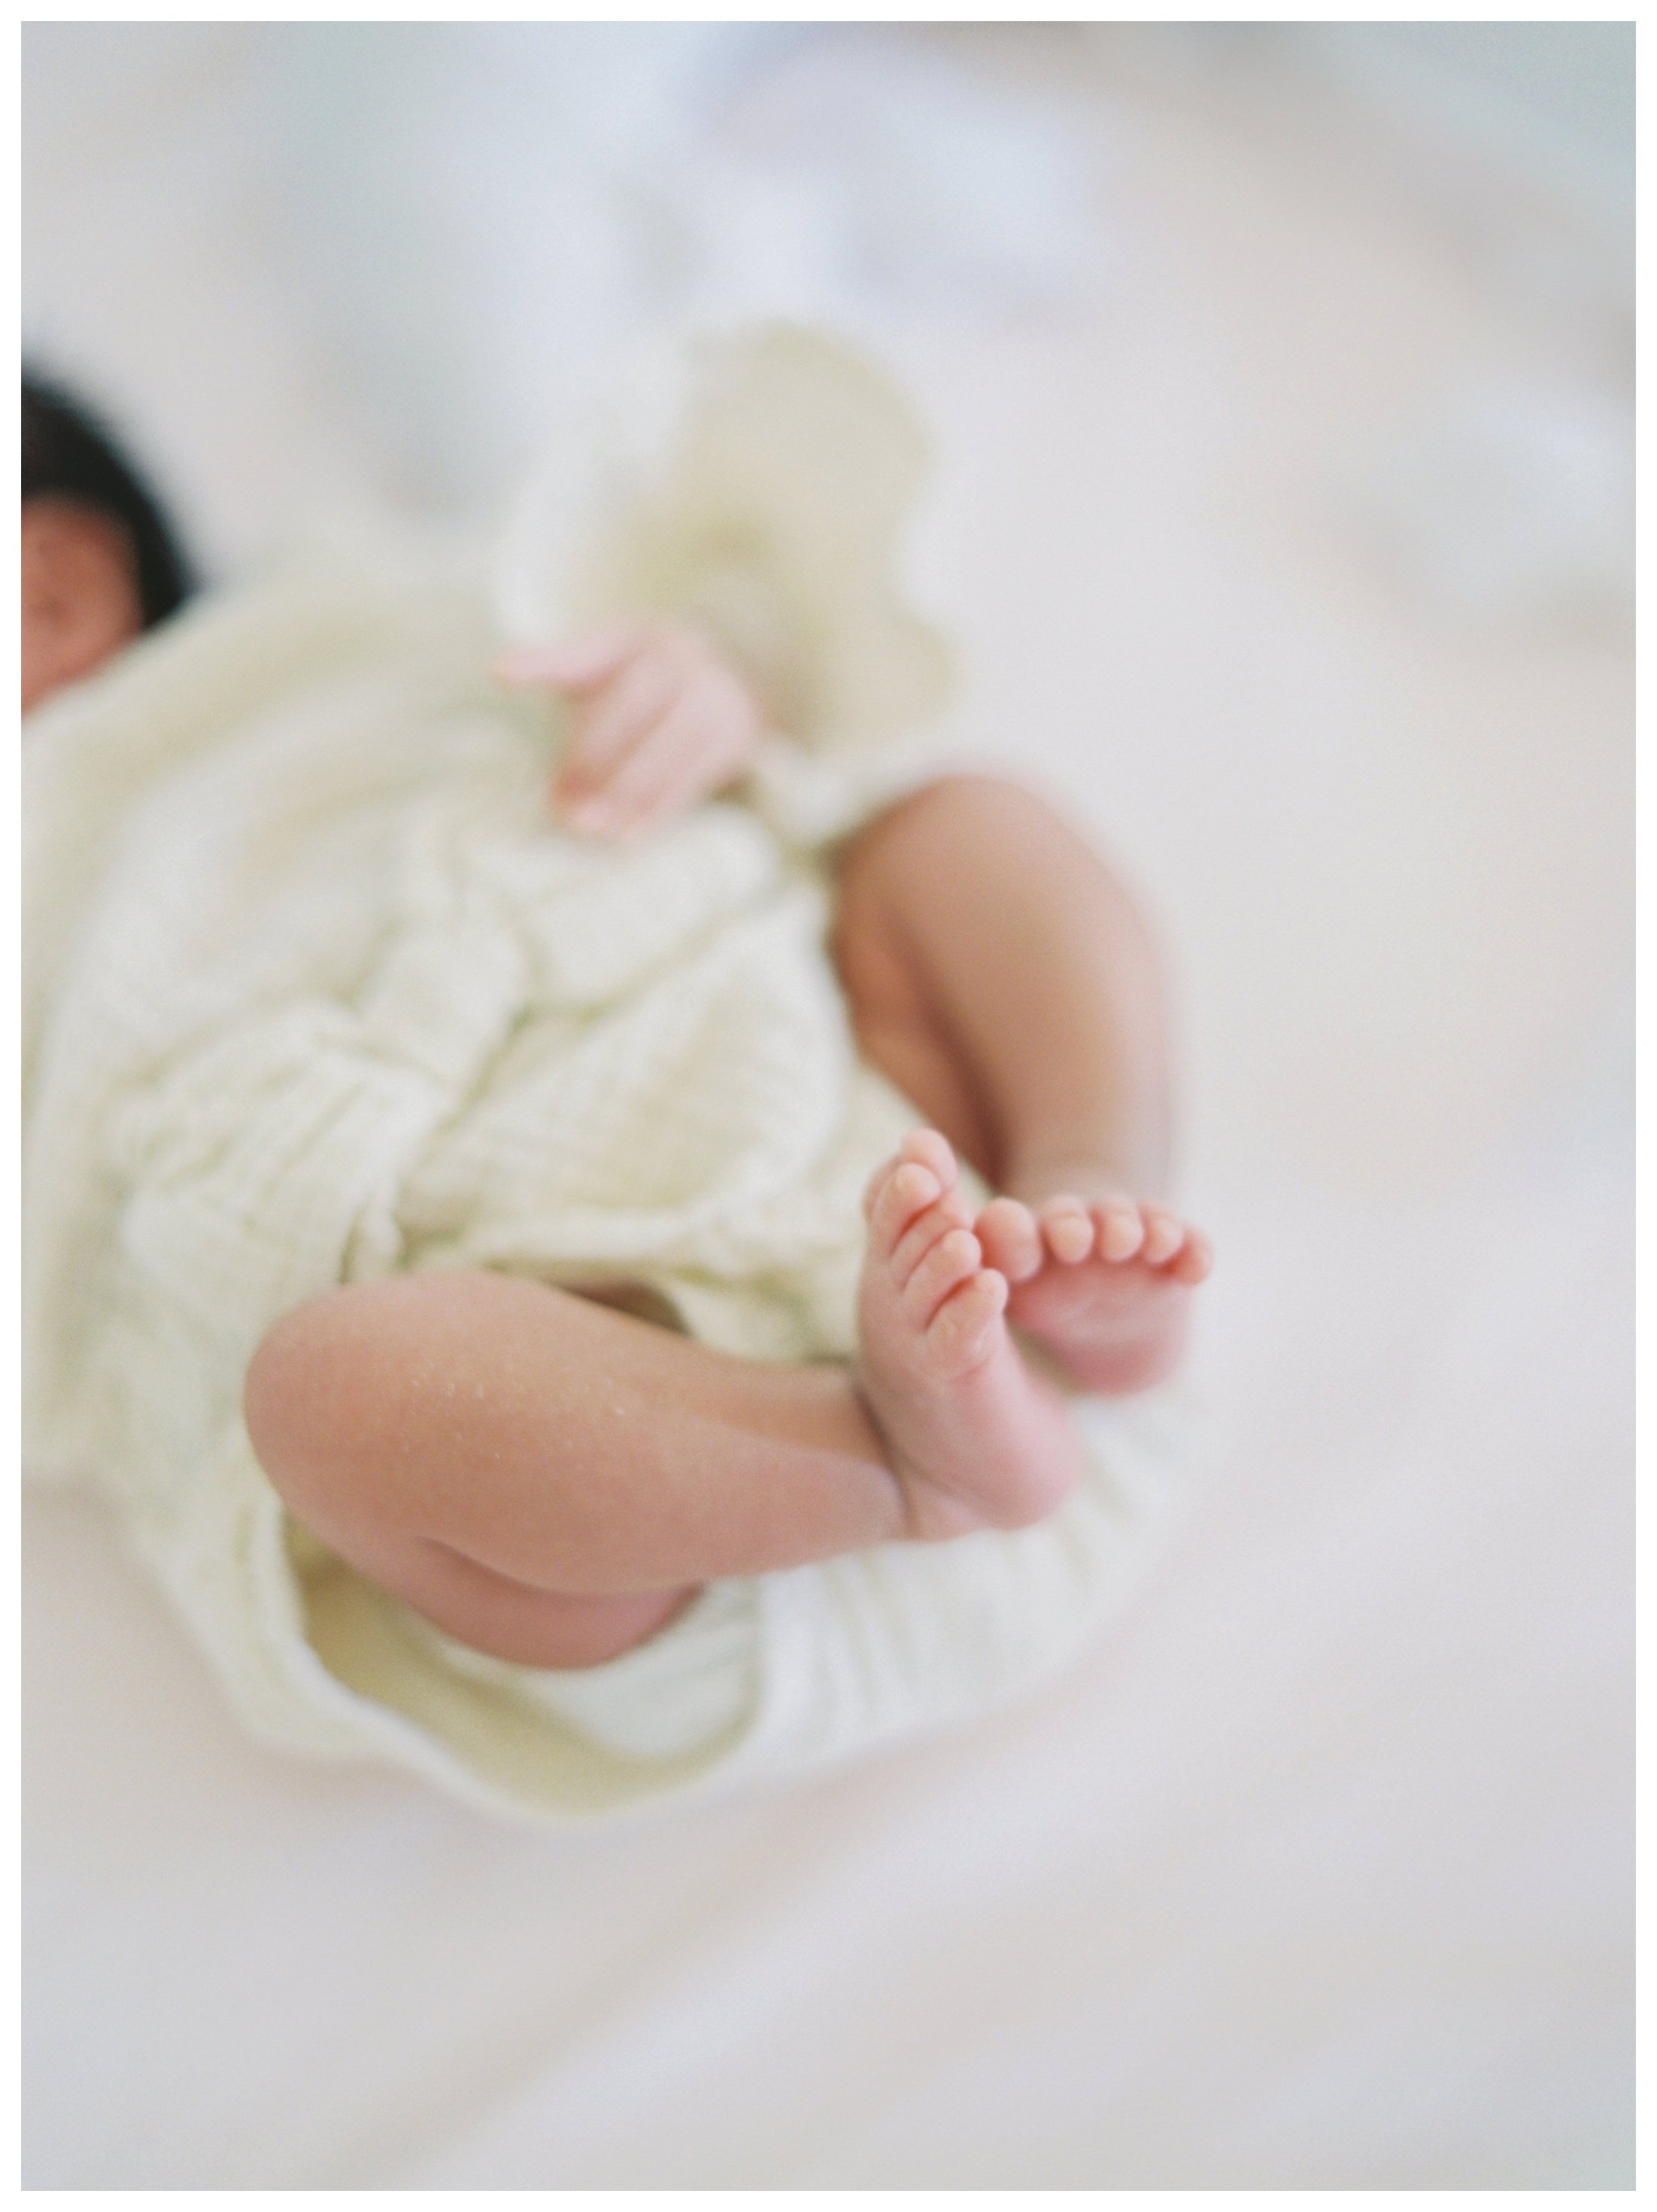 Fishers Newborn Photographer - Baby Emma_0002.jpg